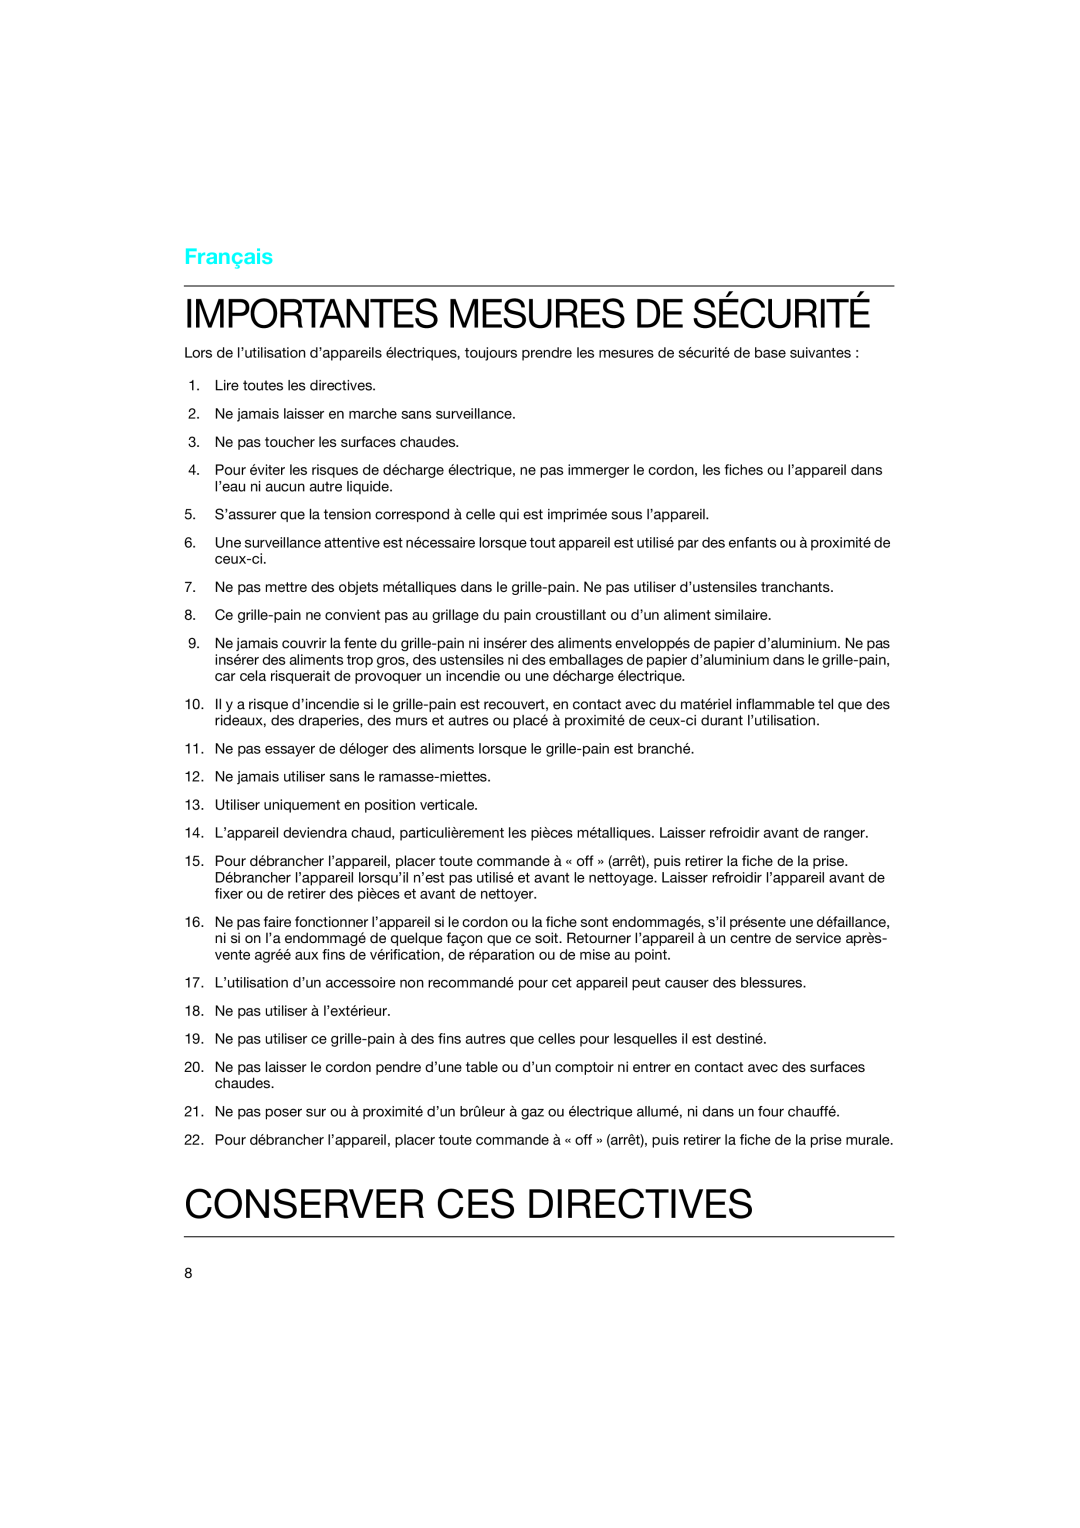 Braun 4118 manual Conserver Ces Directives, Importantes Mesures De Sécurité, Français 